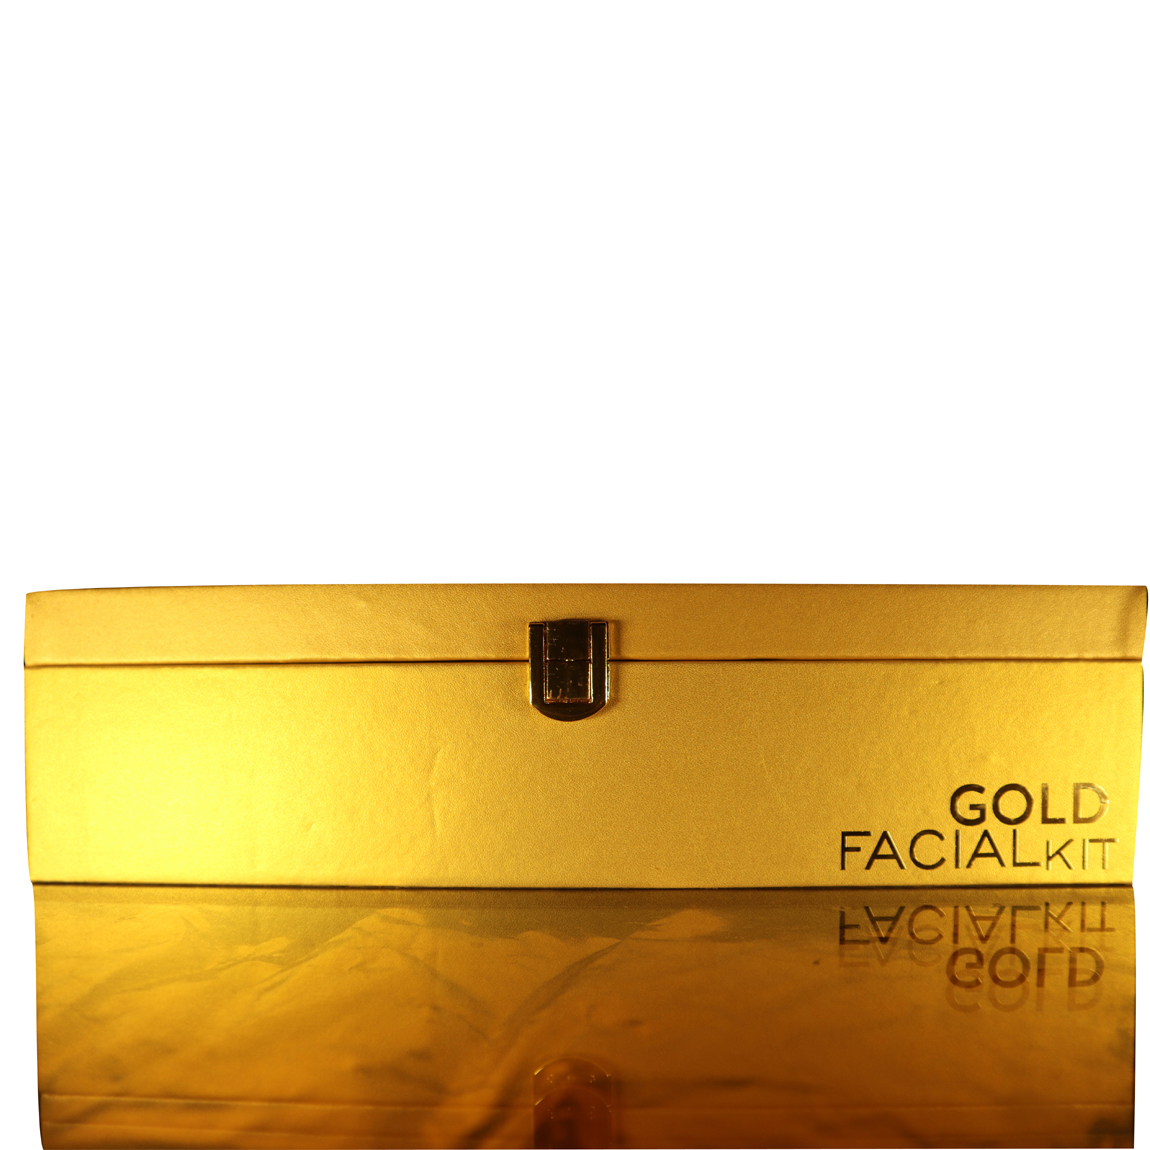 Philia Gold Facial Kit